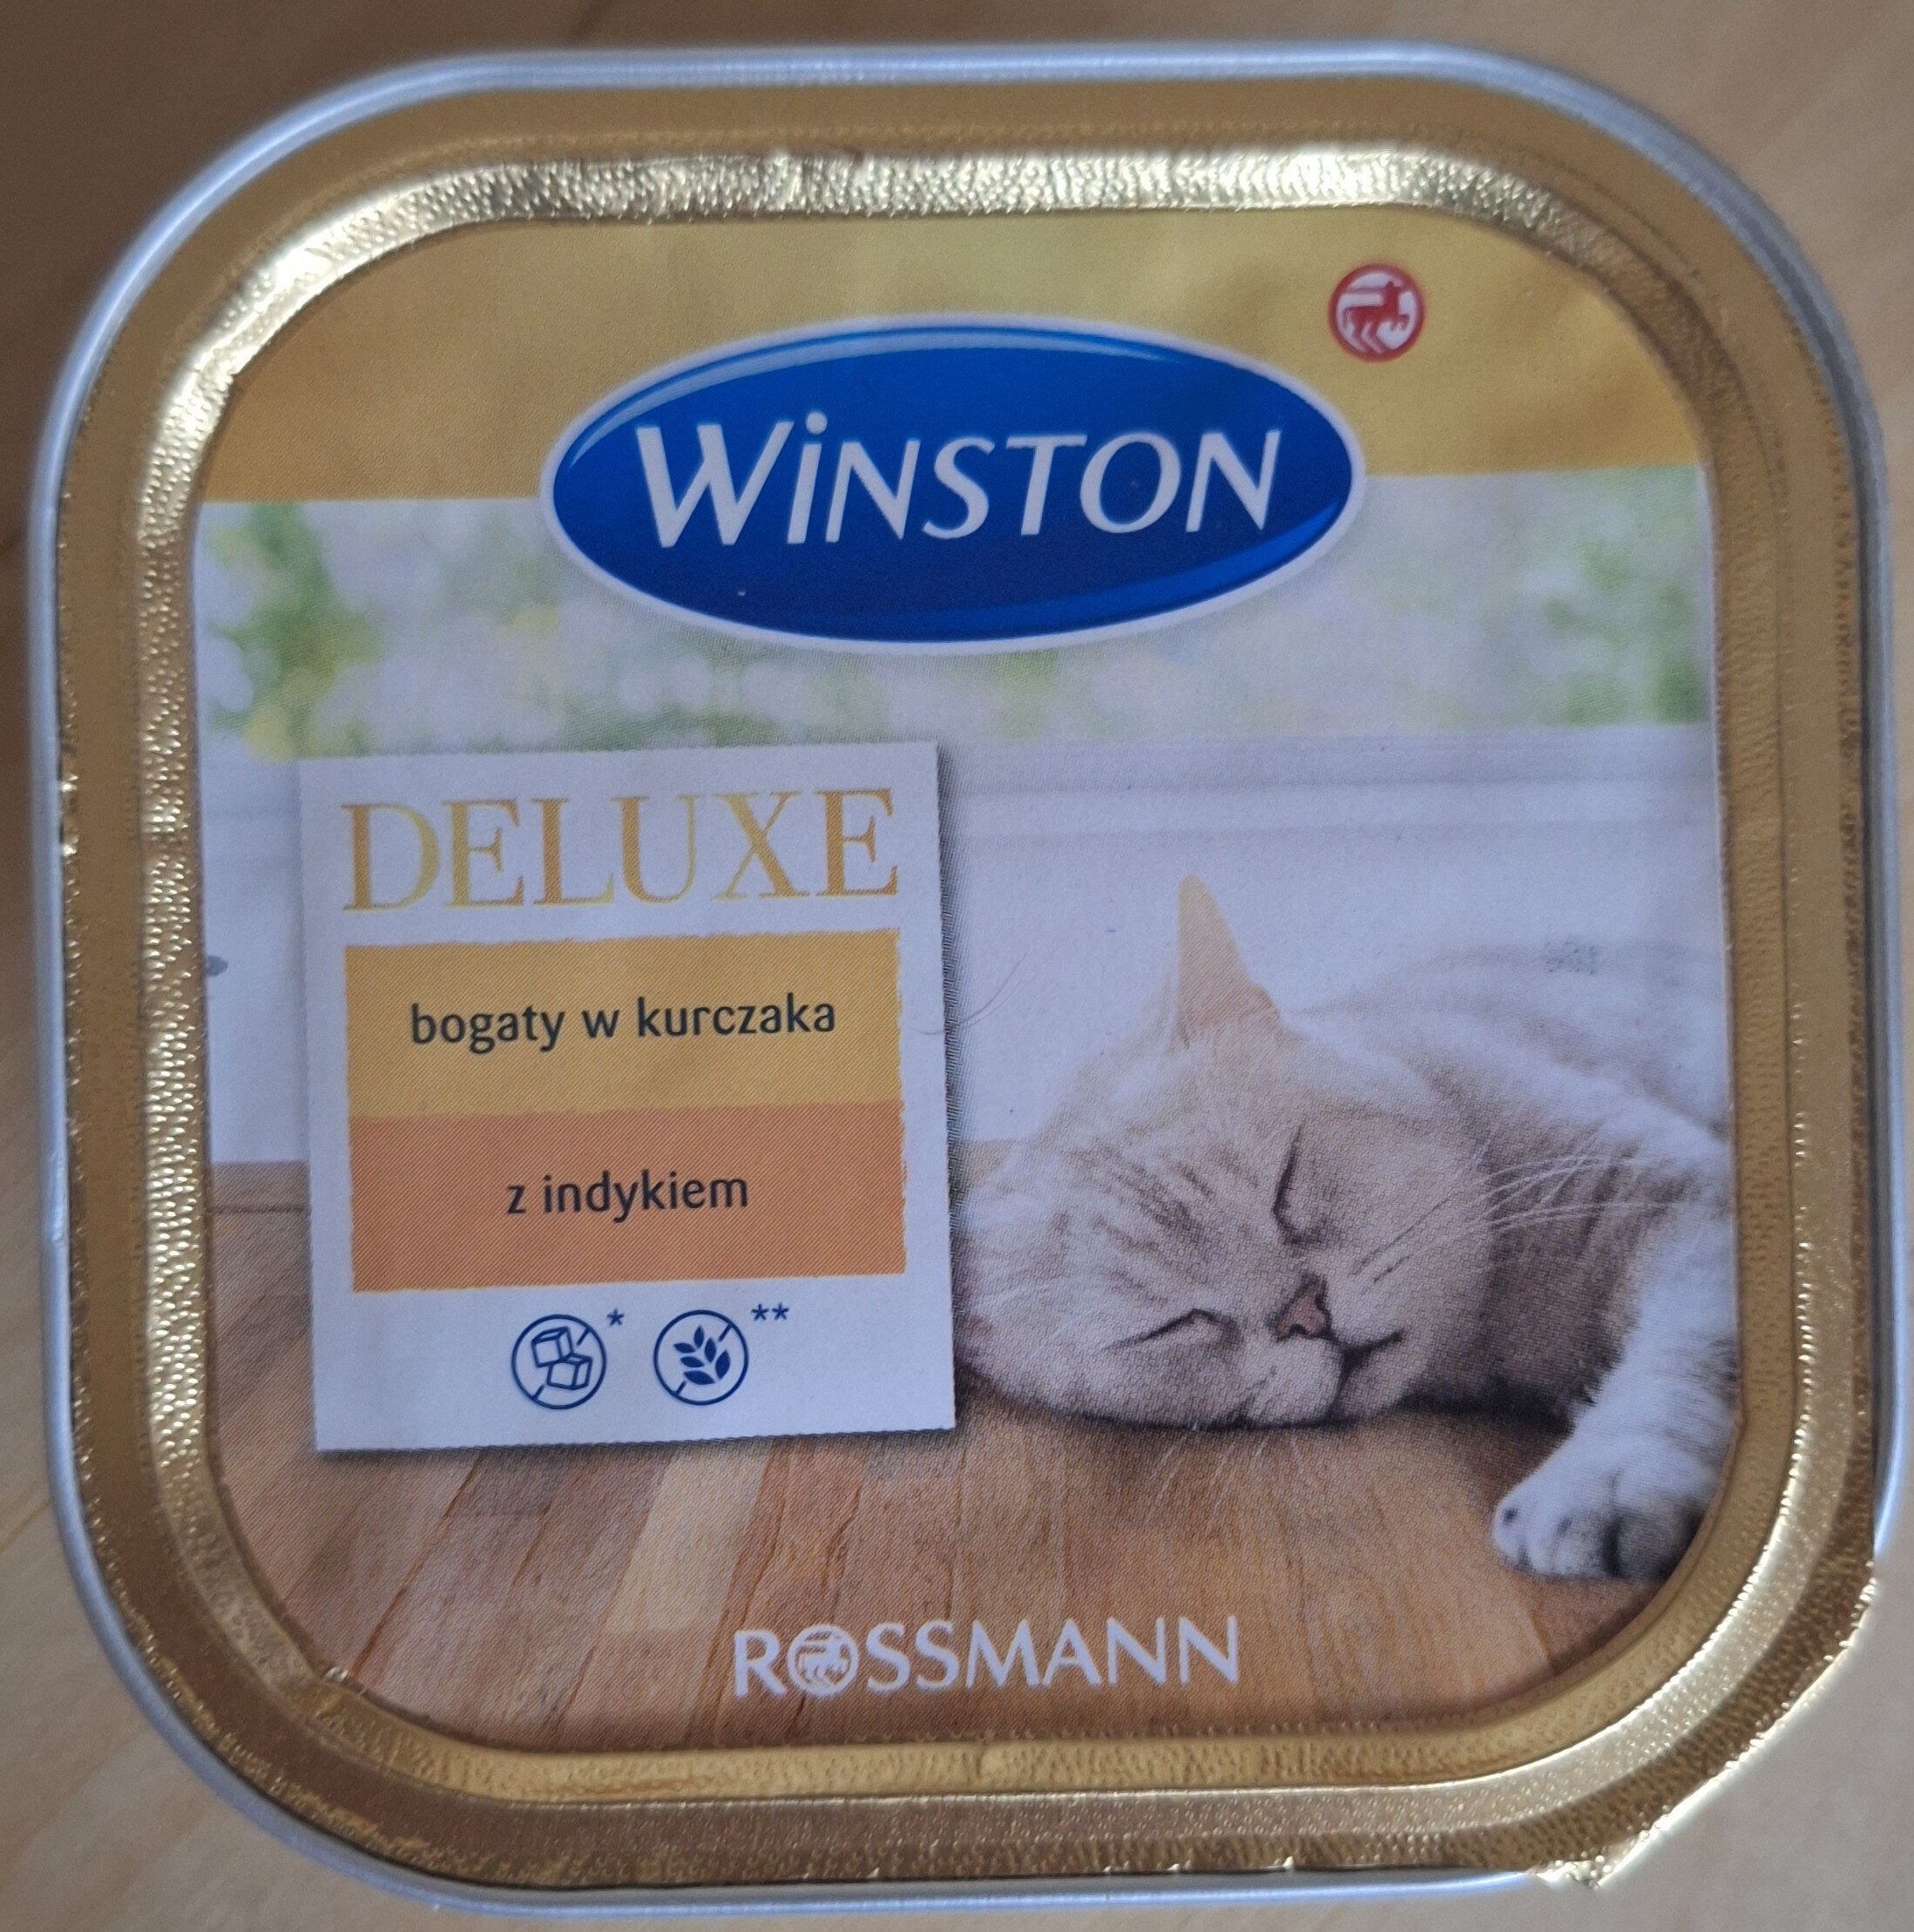 Winston Deluxe : bogaty w kurczaka z indykiem - Product - pl